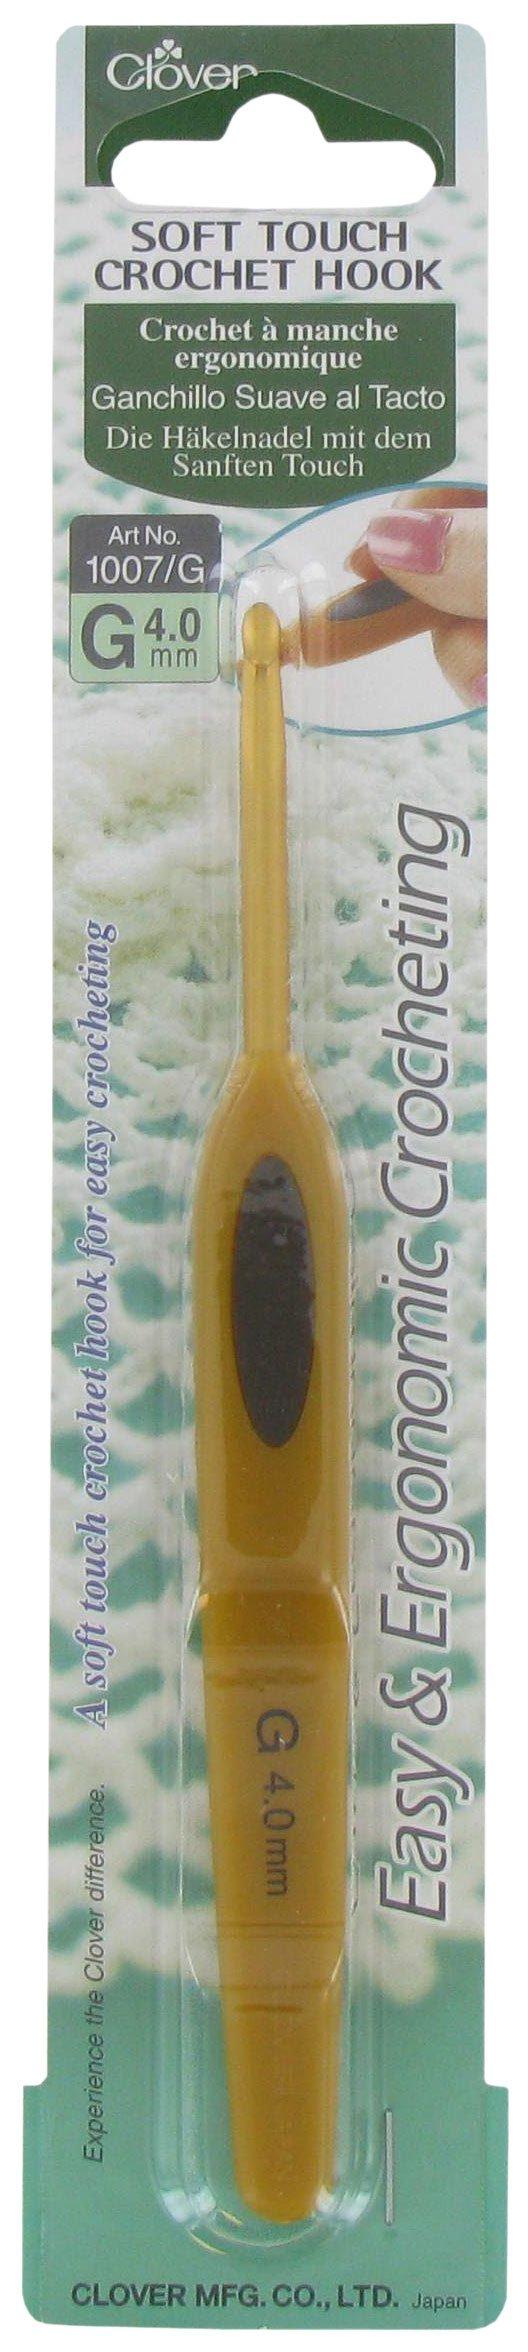 Clover Soft Touch Crochet Hook 0,5mm